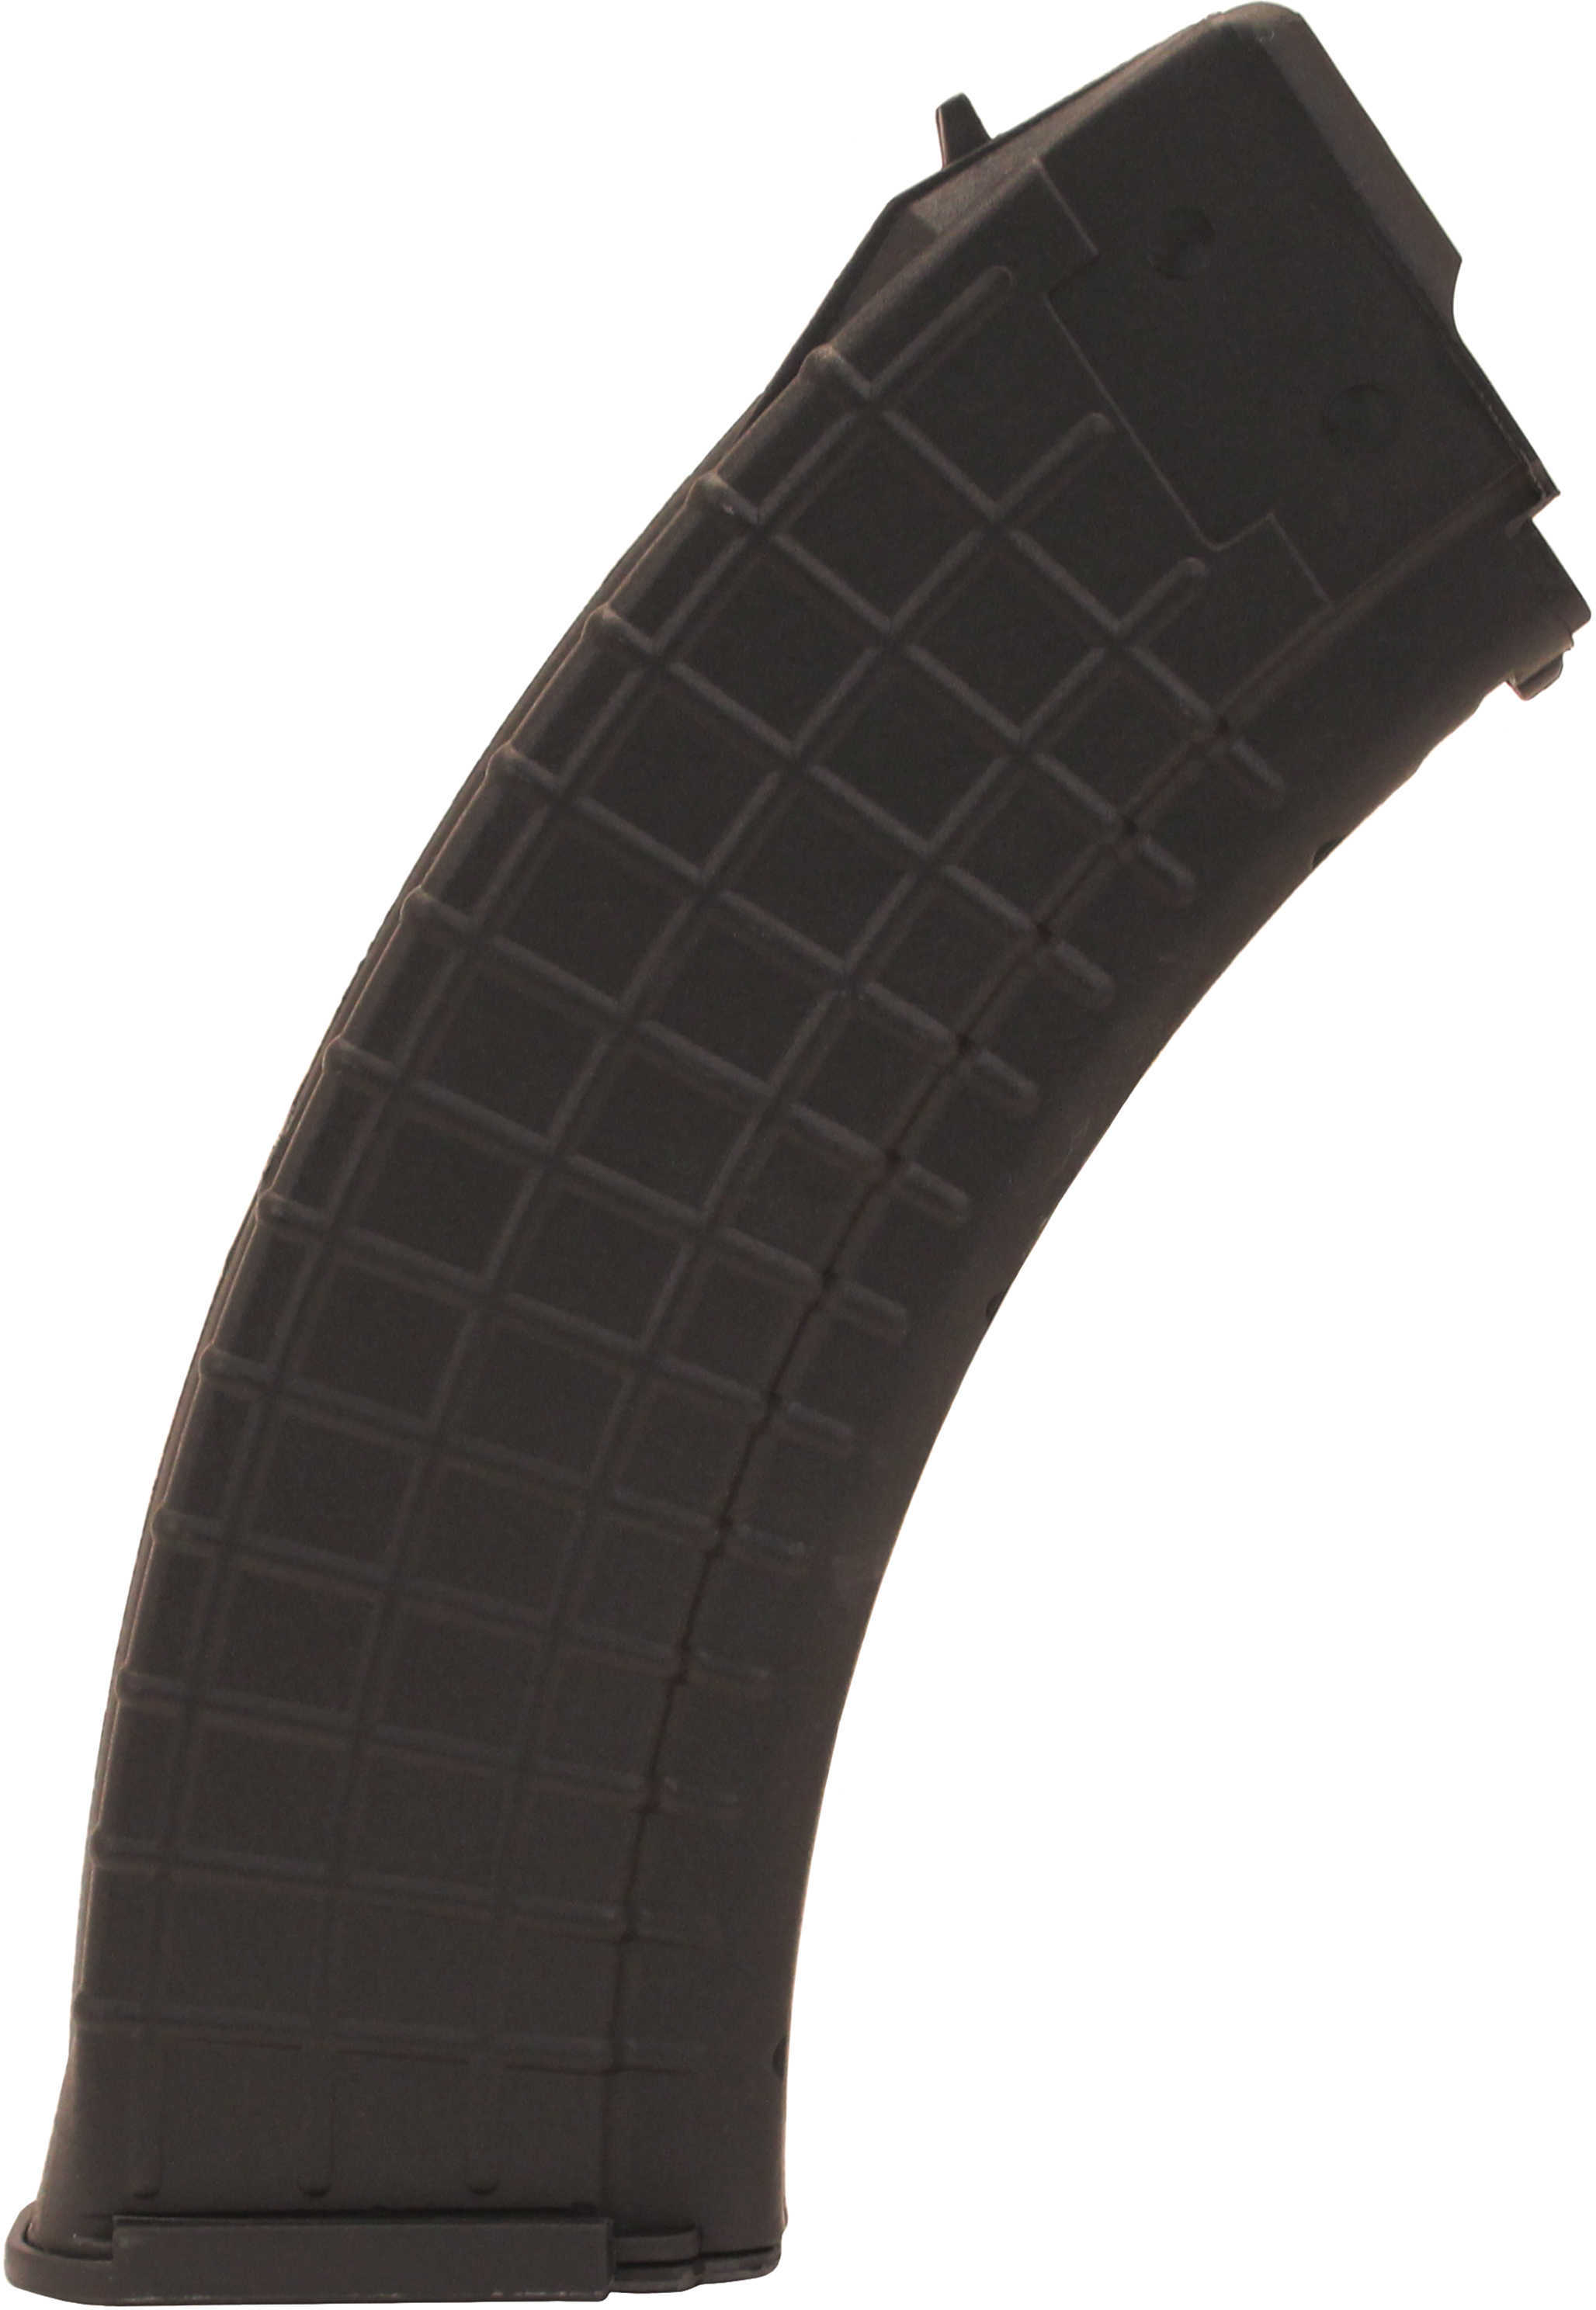 ProMag Magazine 7.62x39 30Rd Fits AK-47 Black Polymer AK-A1